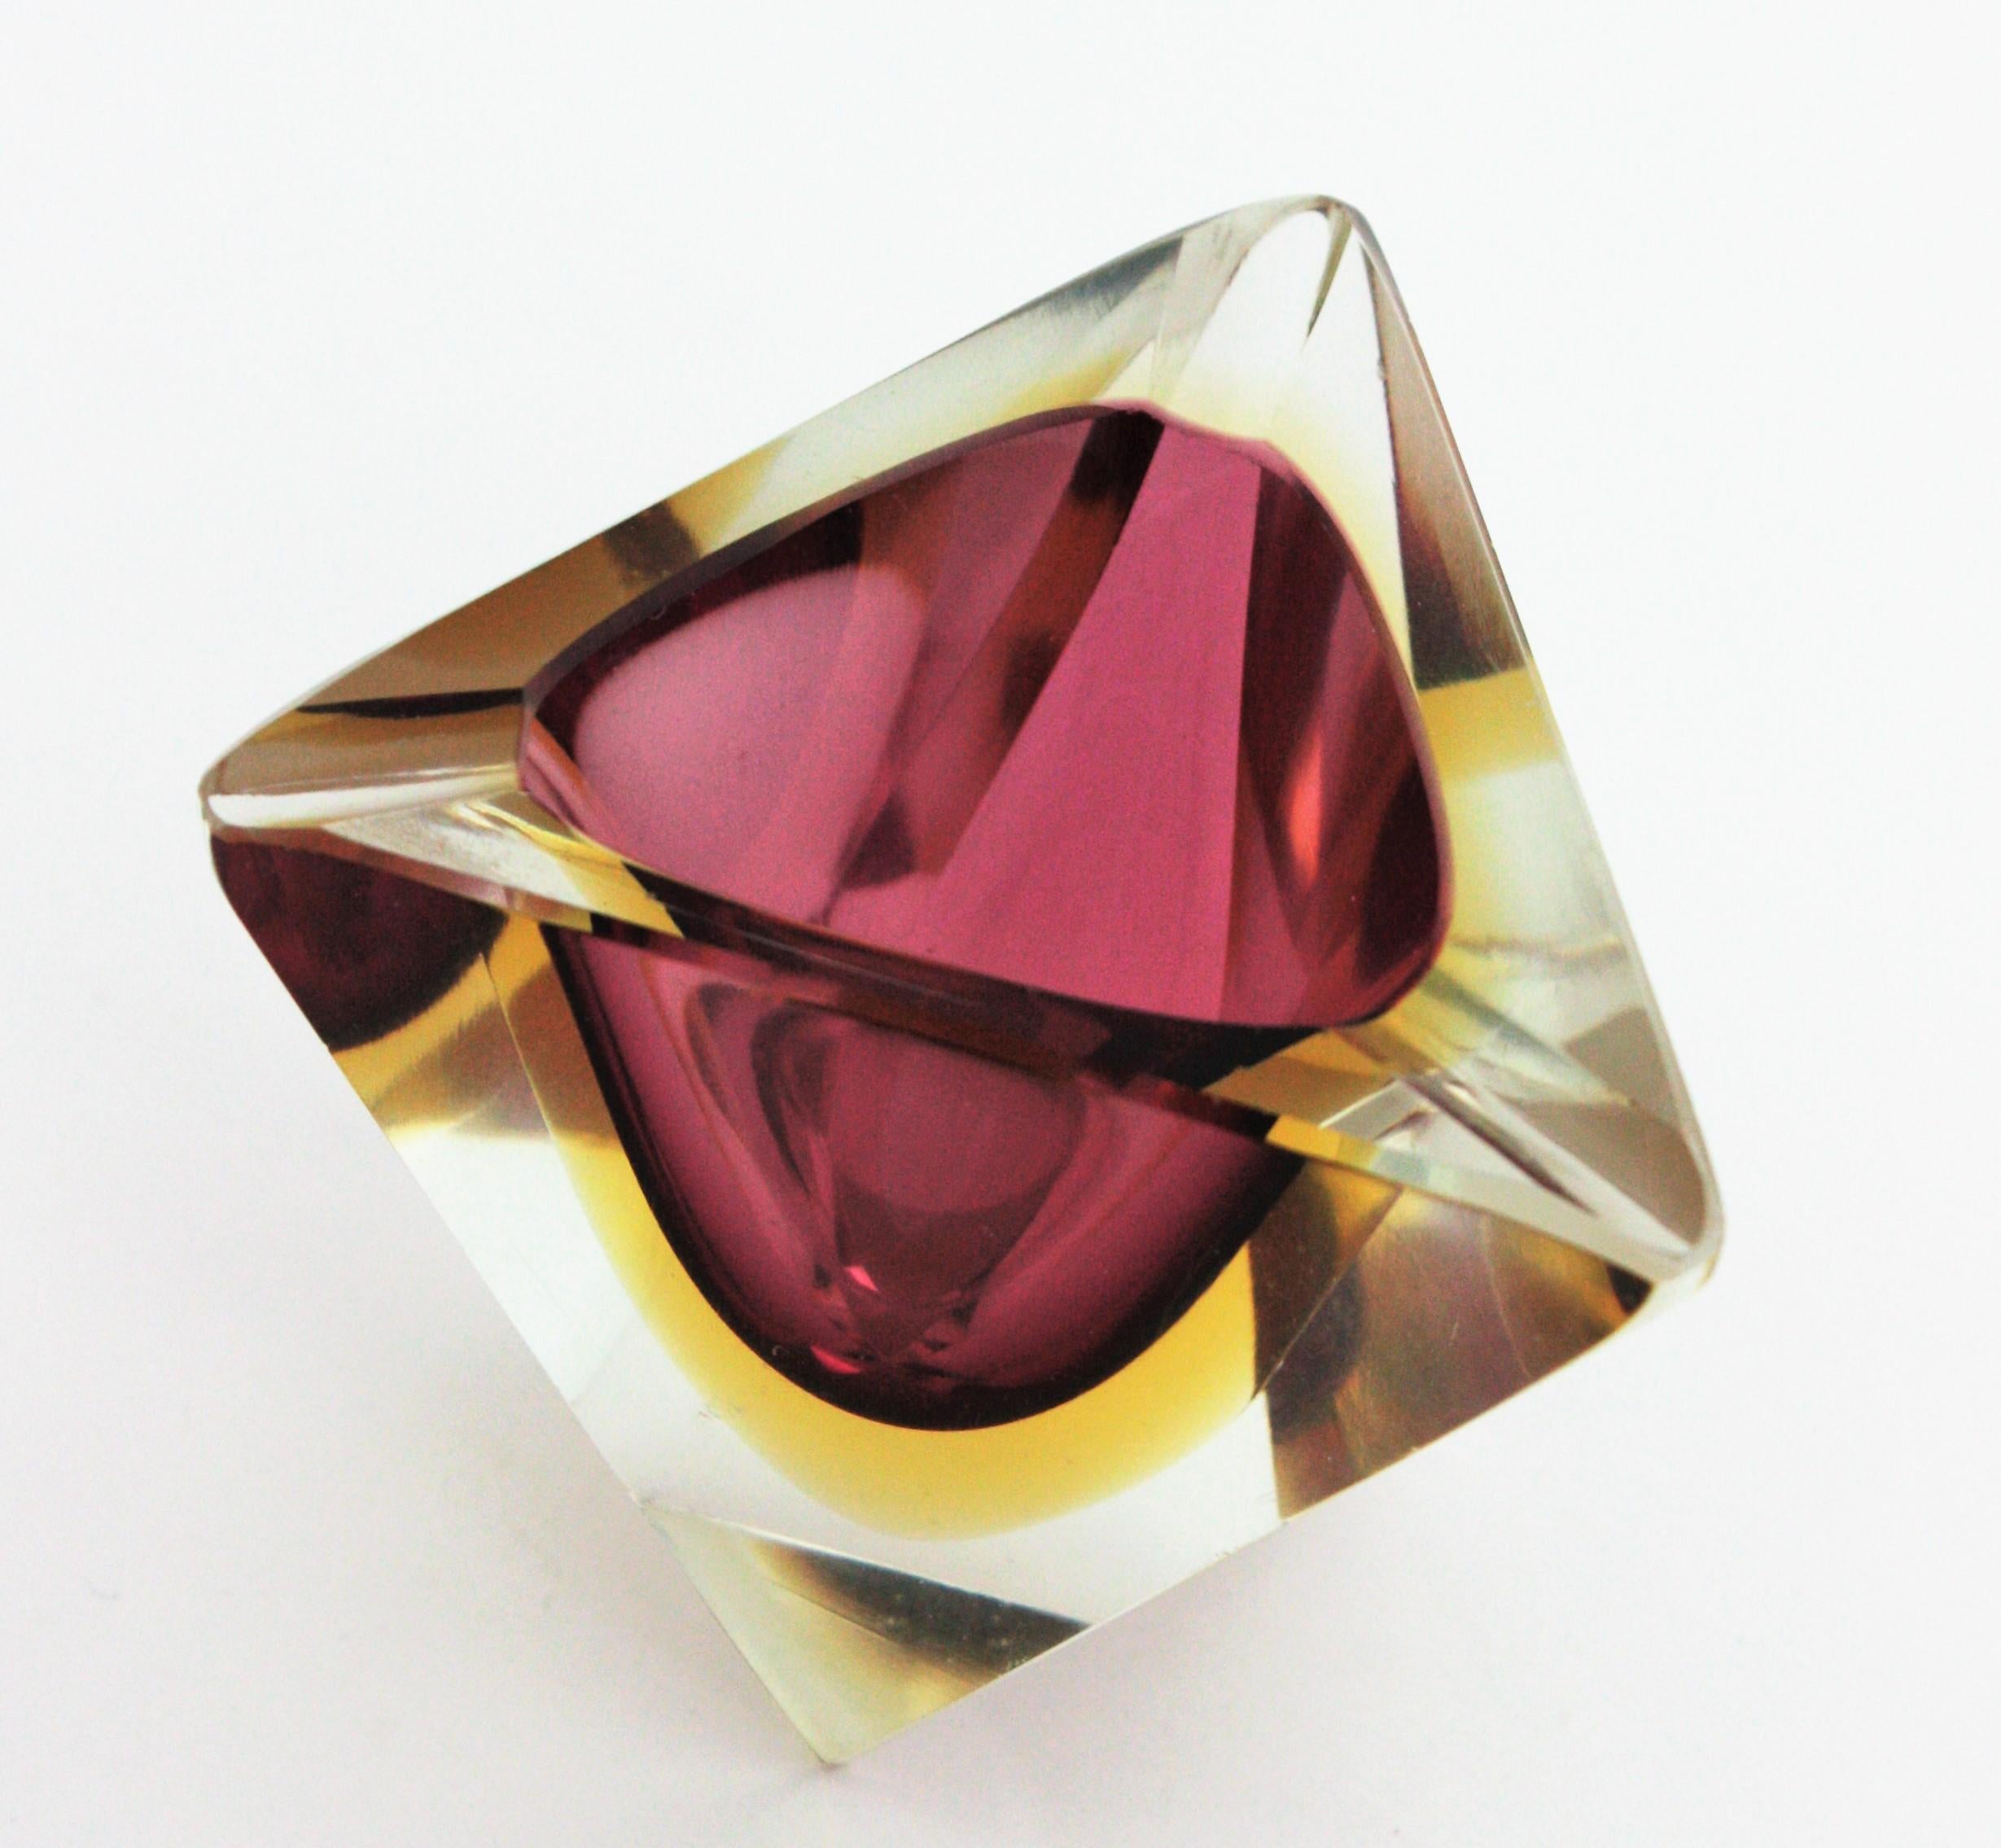 Dreieckiger Aschenbecher aus facettiertem Murano-Glas von Sommerso. Flavio Poli zugeschrieben, Italien, 1950er Jahre.
Lila und gelbes Glas in Klarglas eingefasst.
Er kann auch als kleine Ringe oder Schmuckschale verwendet werden.
Maße: 9 cm B x 8